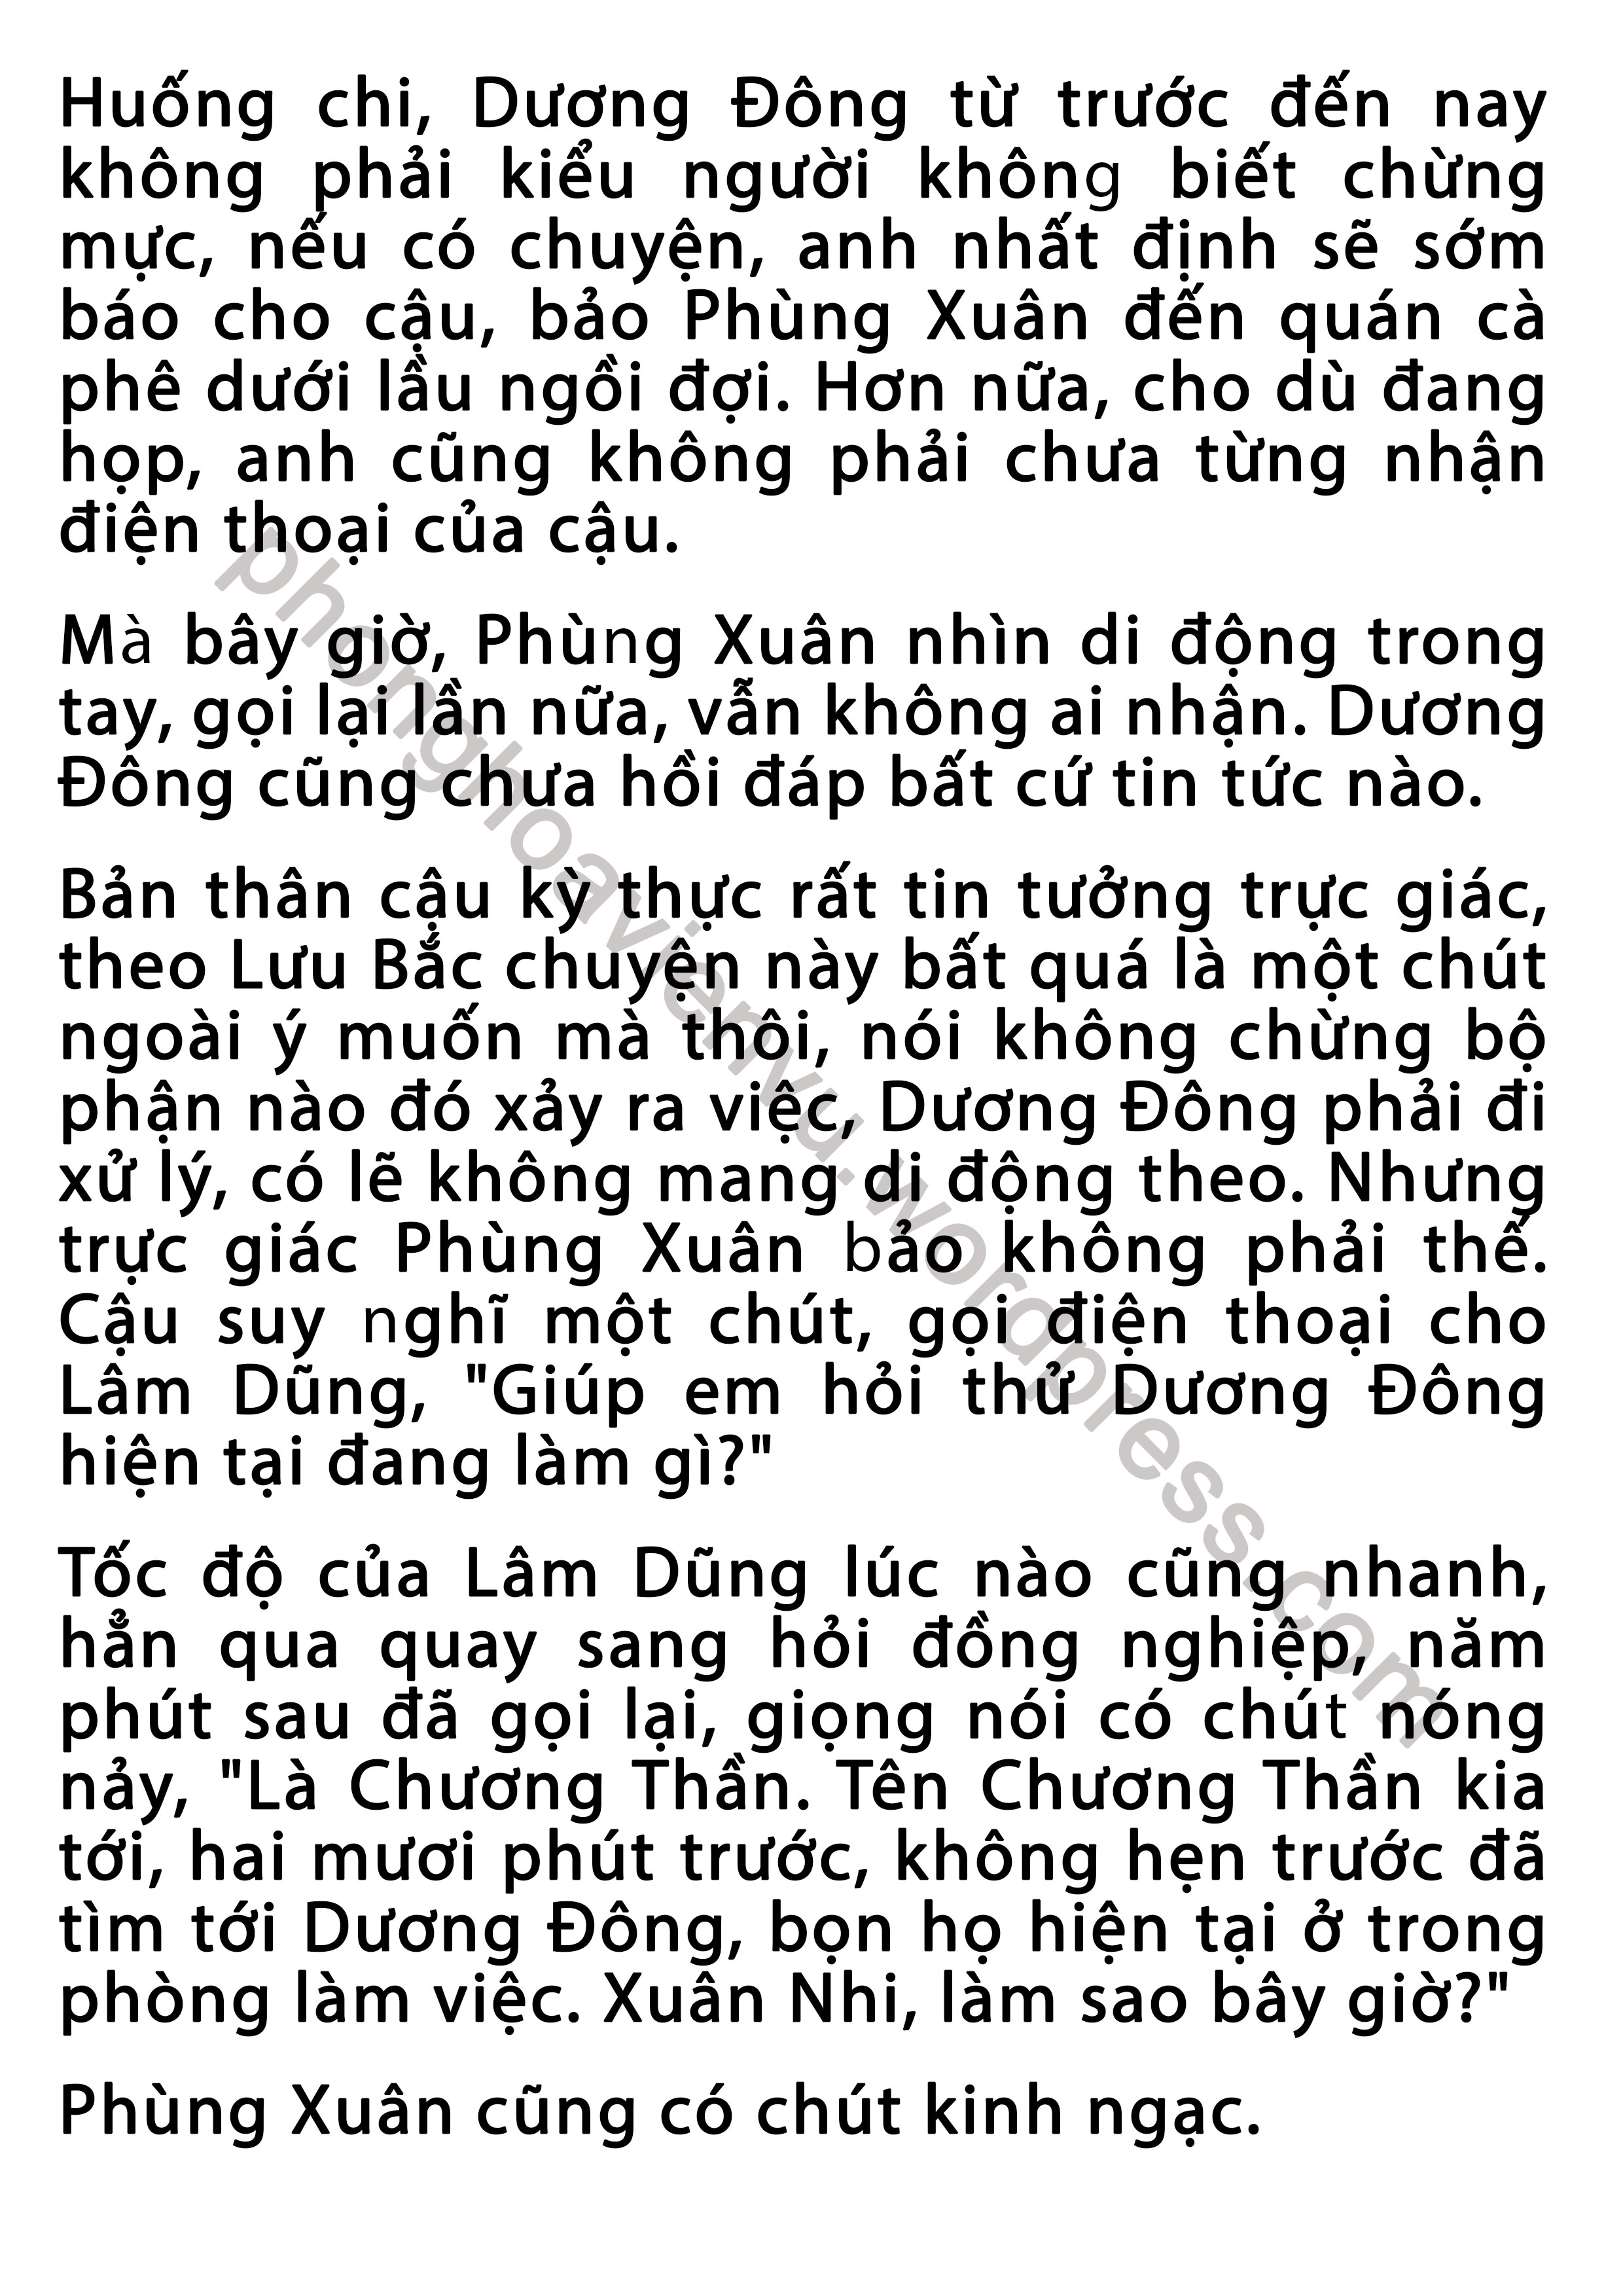 phung-xuan-43-pic5